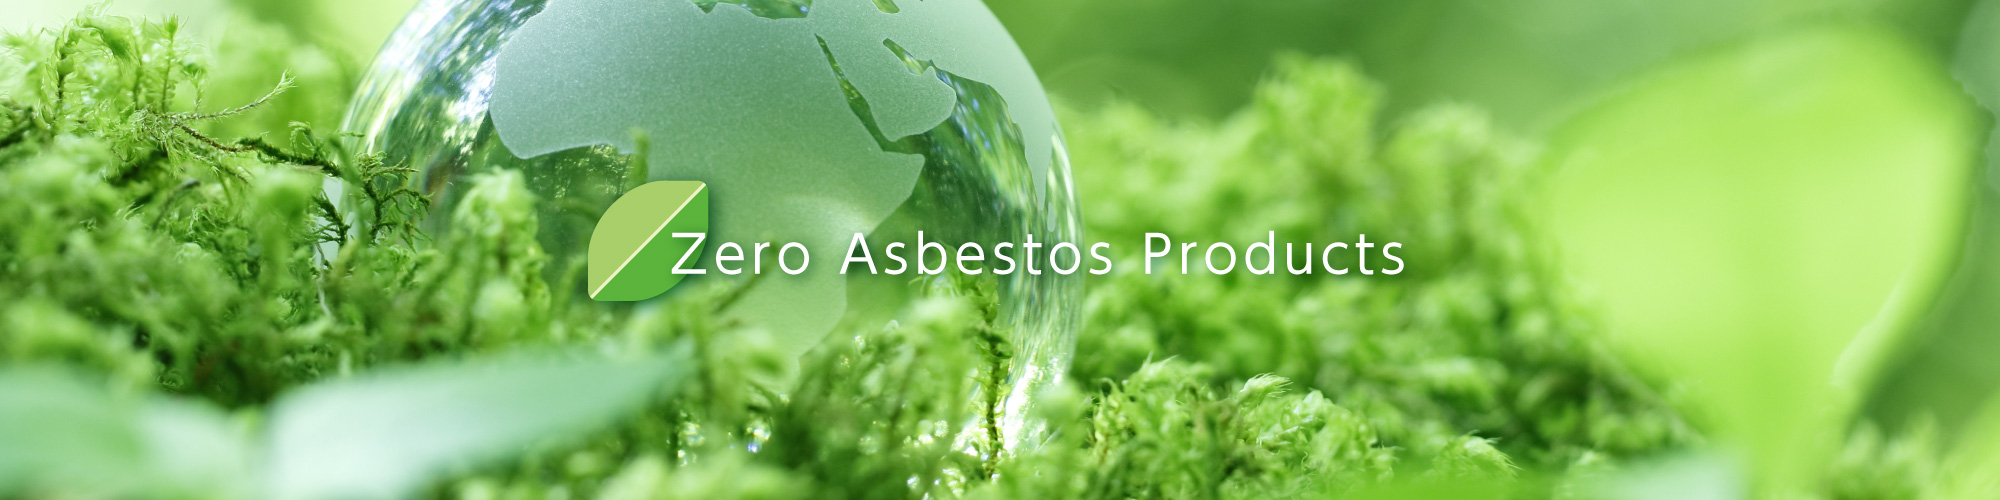 Zero Asbestos Products image